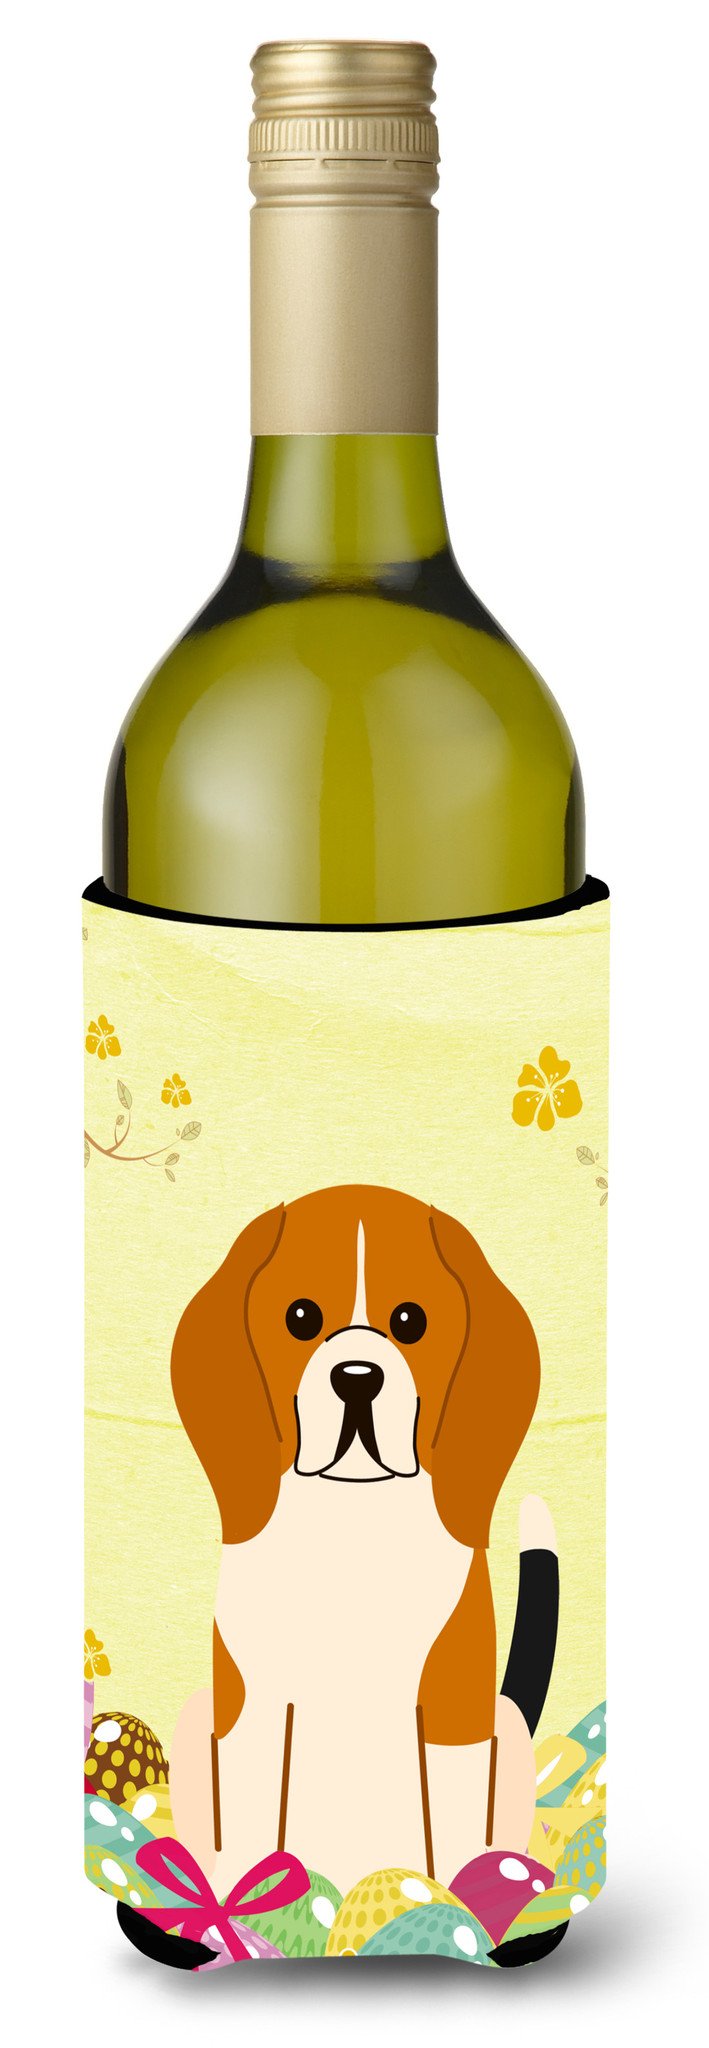 Easter Eggs Beagle Tricolor Wine Bottle Beverge Insulator Hugger BB6040LITERK by Caroline's Treasures